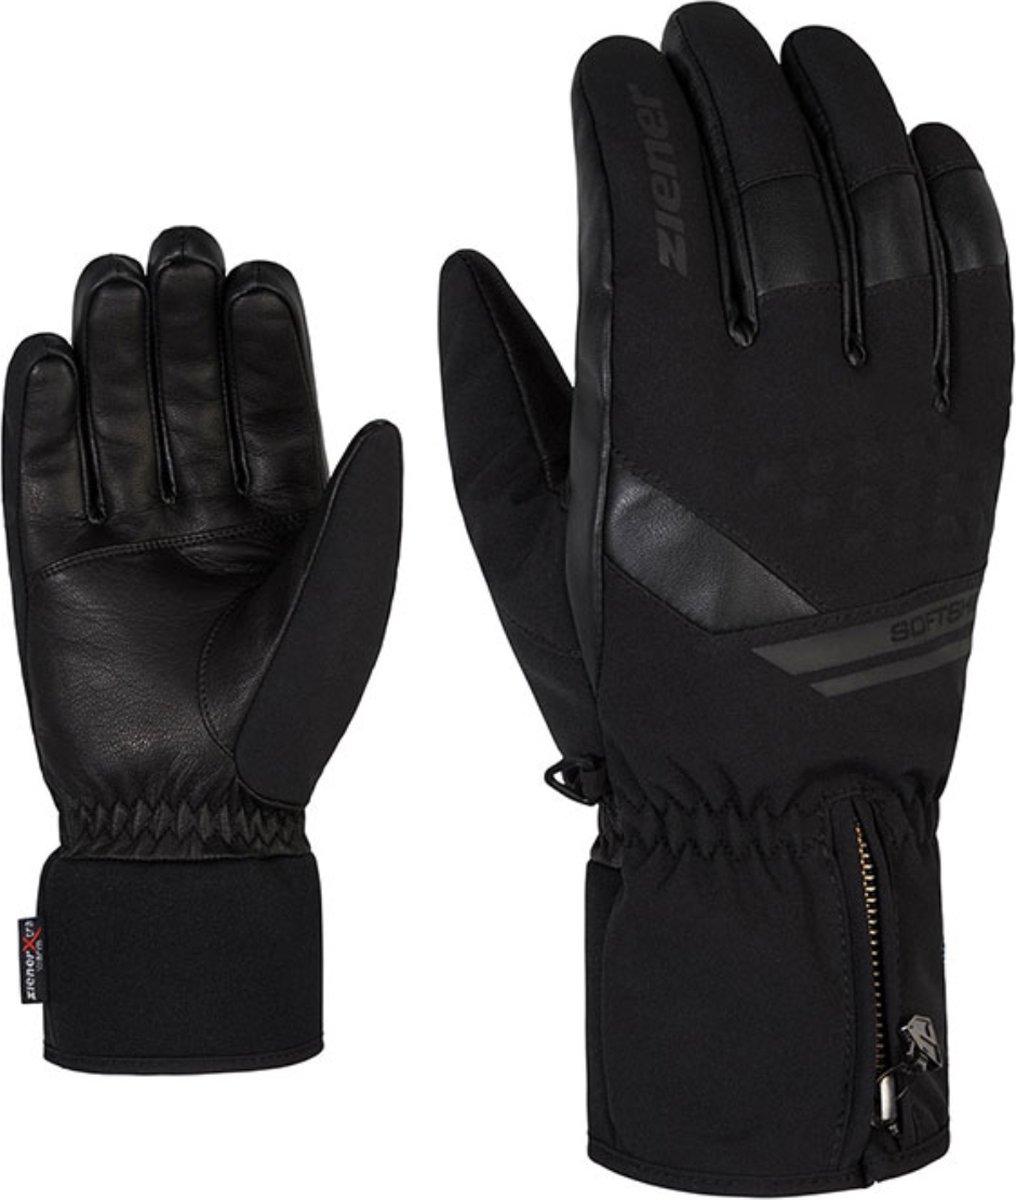 Ziener Goman AS(R) Glove - Wintersporthandschoen Voor Heren - Zwart - 10,5